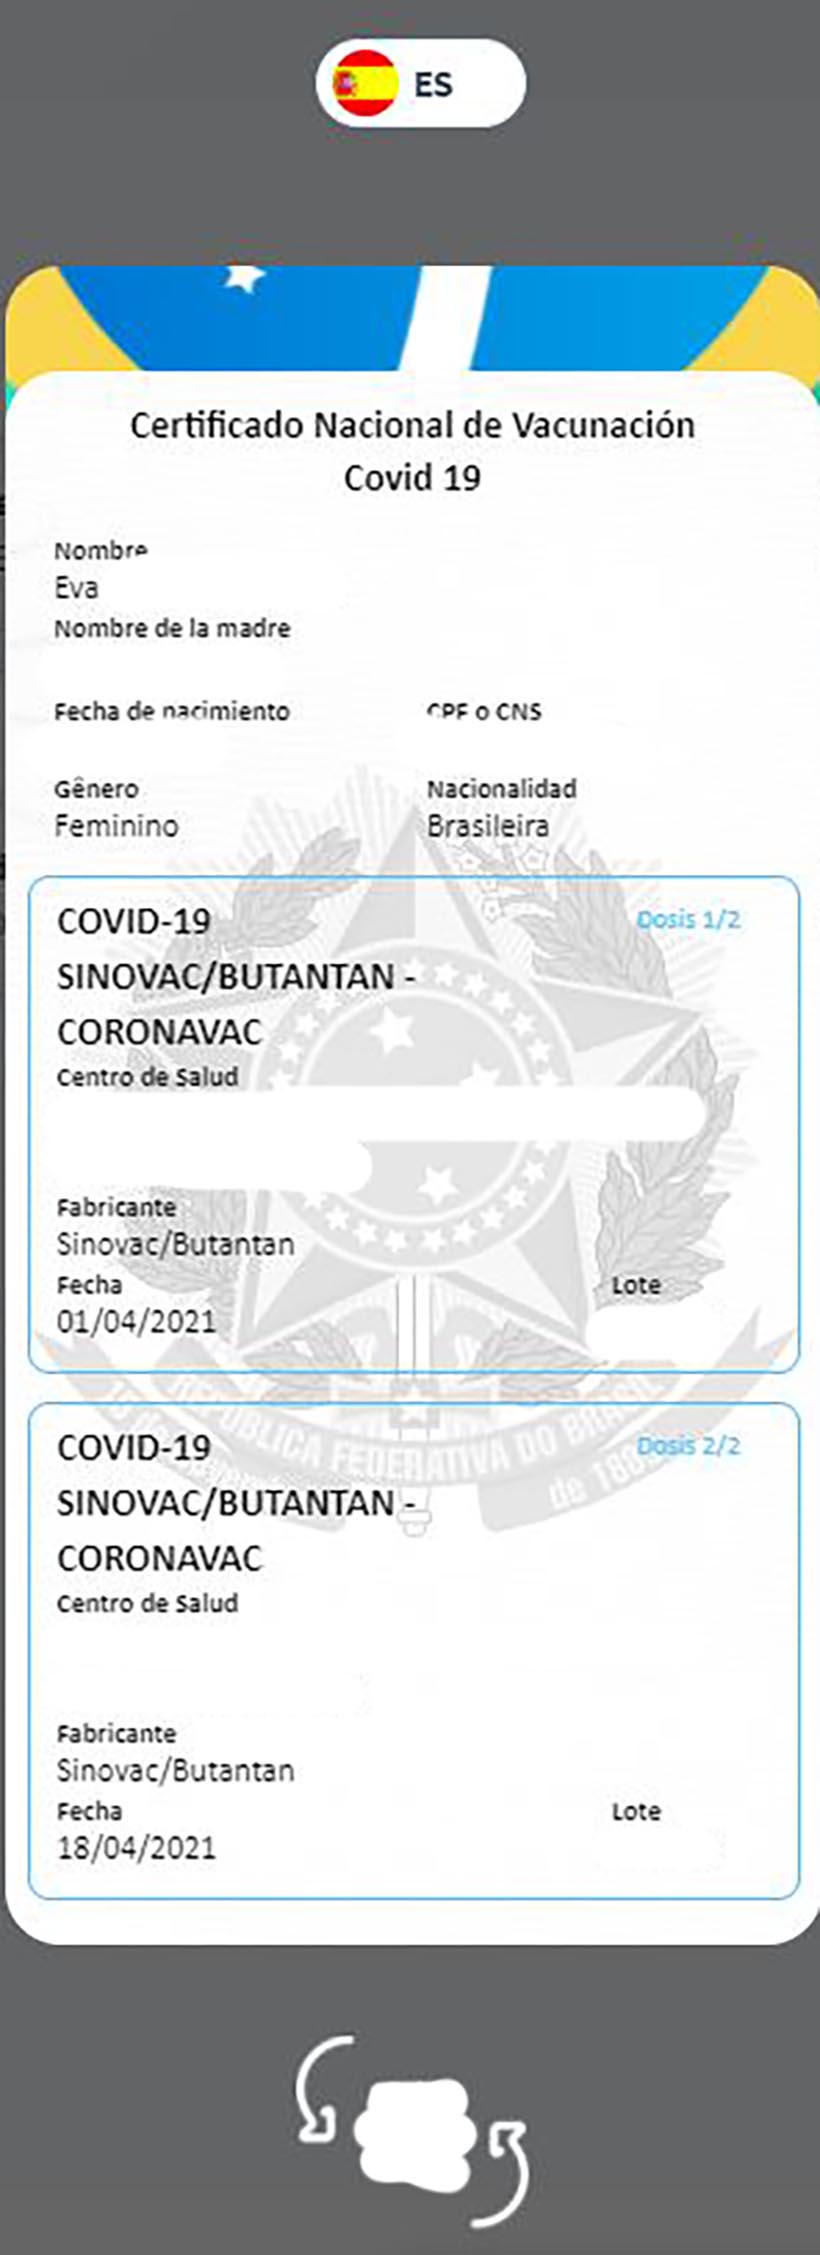 Certificado Nacional de Vacinação contra Covid-19